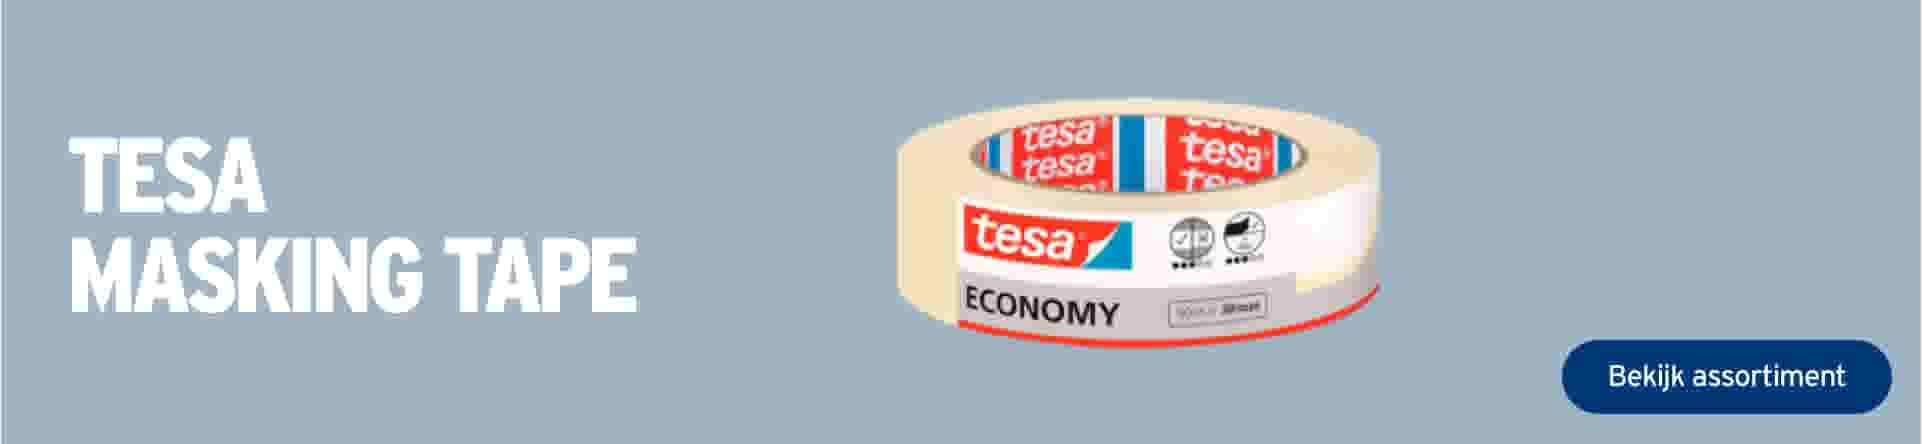 Tesa masking tape